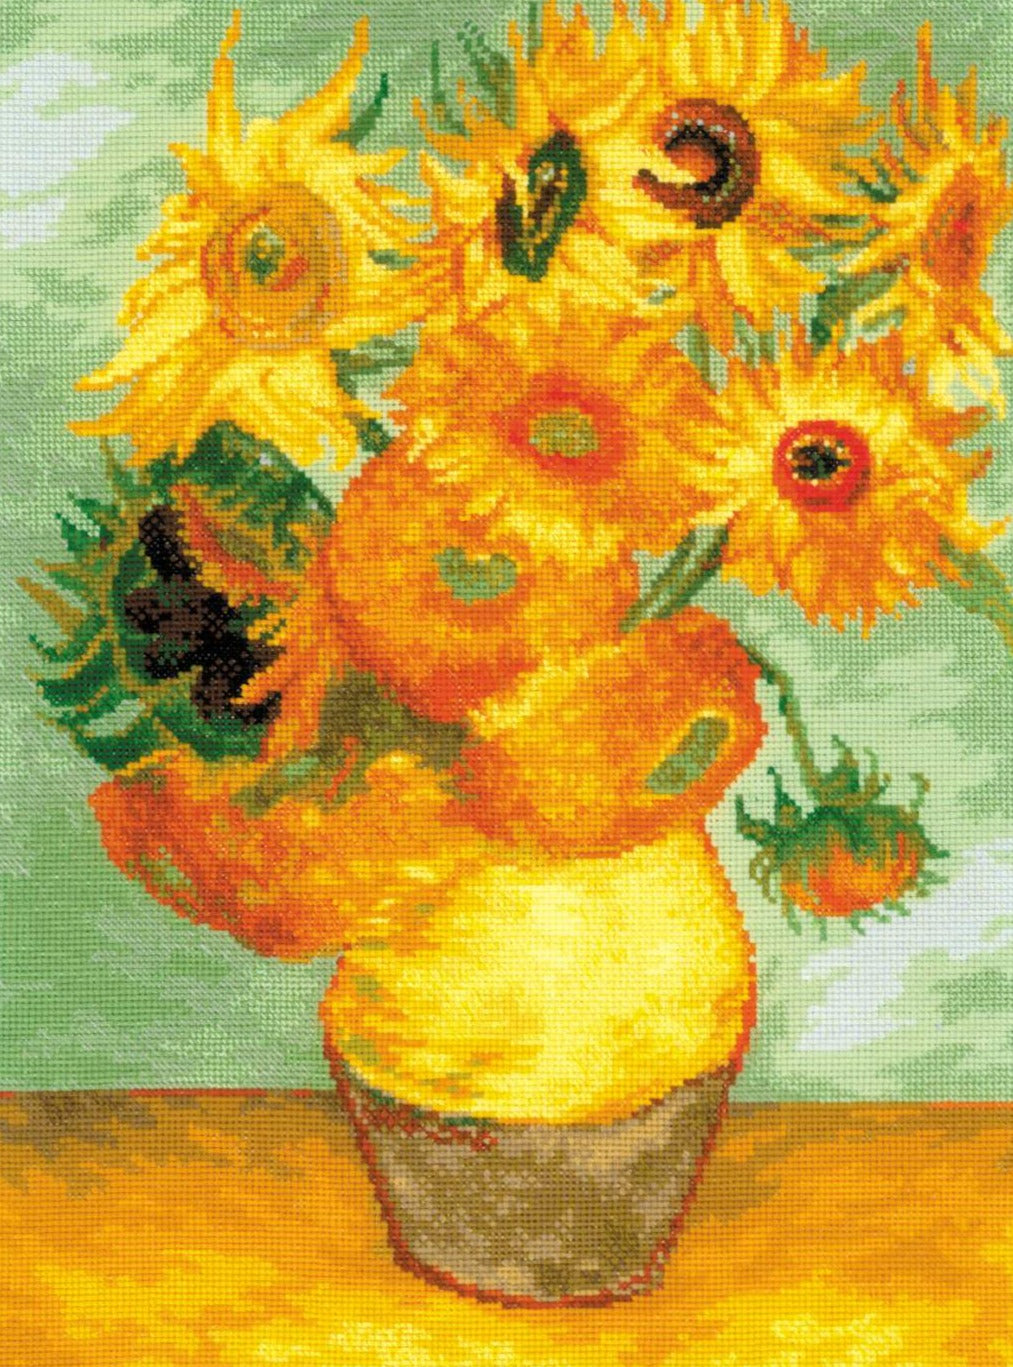 רקמה על בד גבינה - Sunflowers after V. Van Gogh's Painting